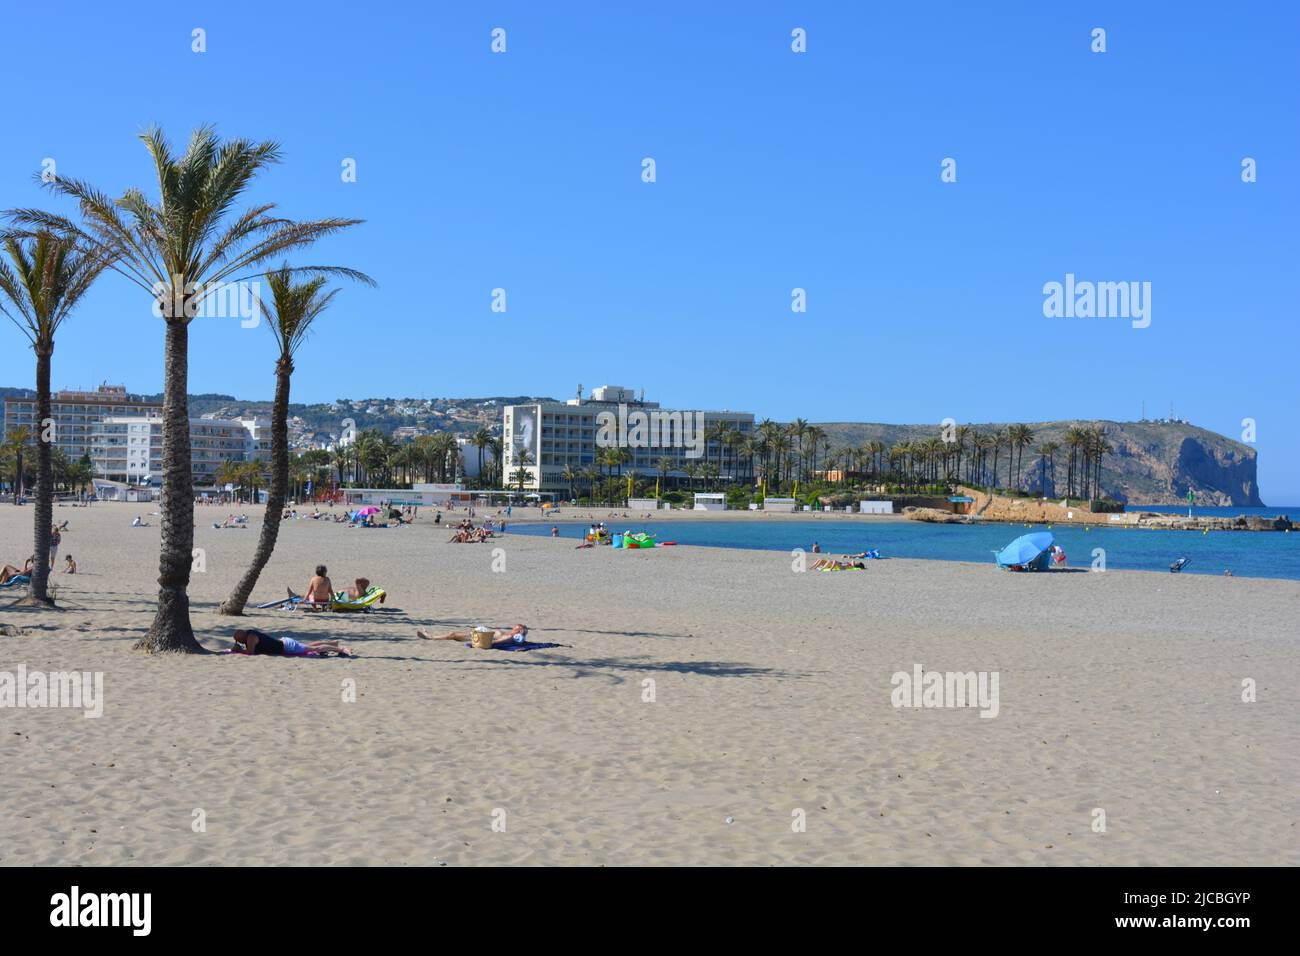 Turistas en playa Arenal con Parador y Cabo San Antonio detrás, Javea, Alicante, España Foto de stock